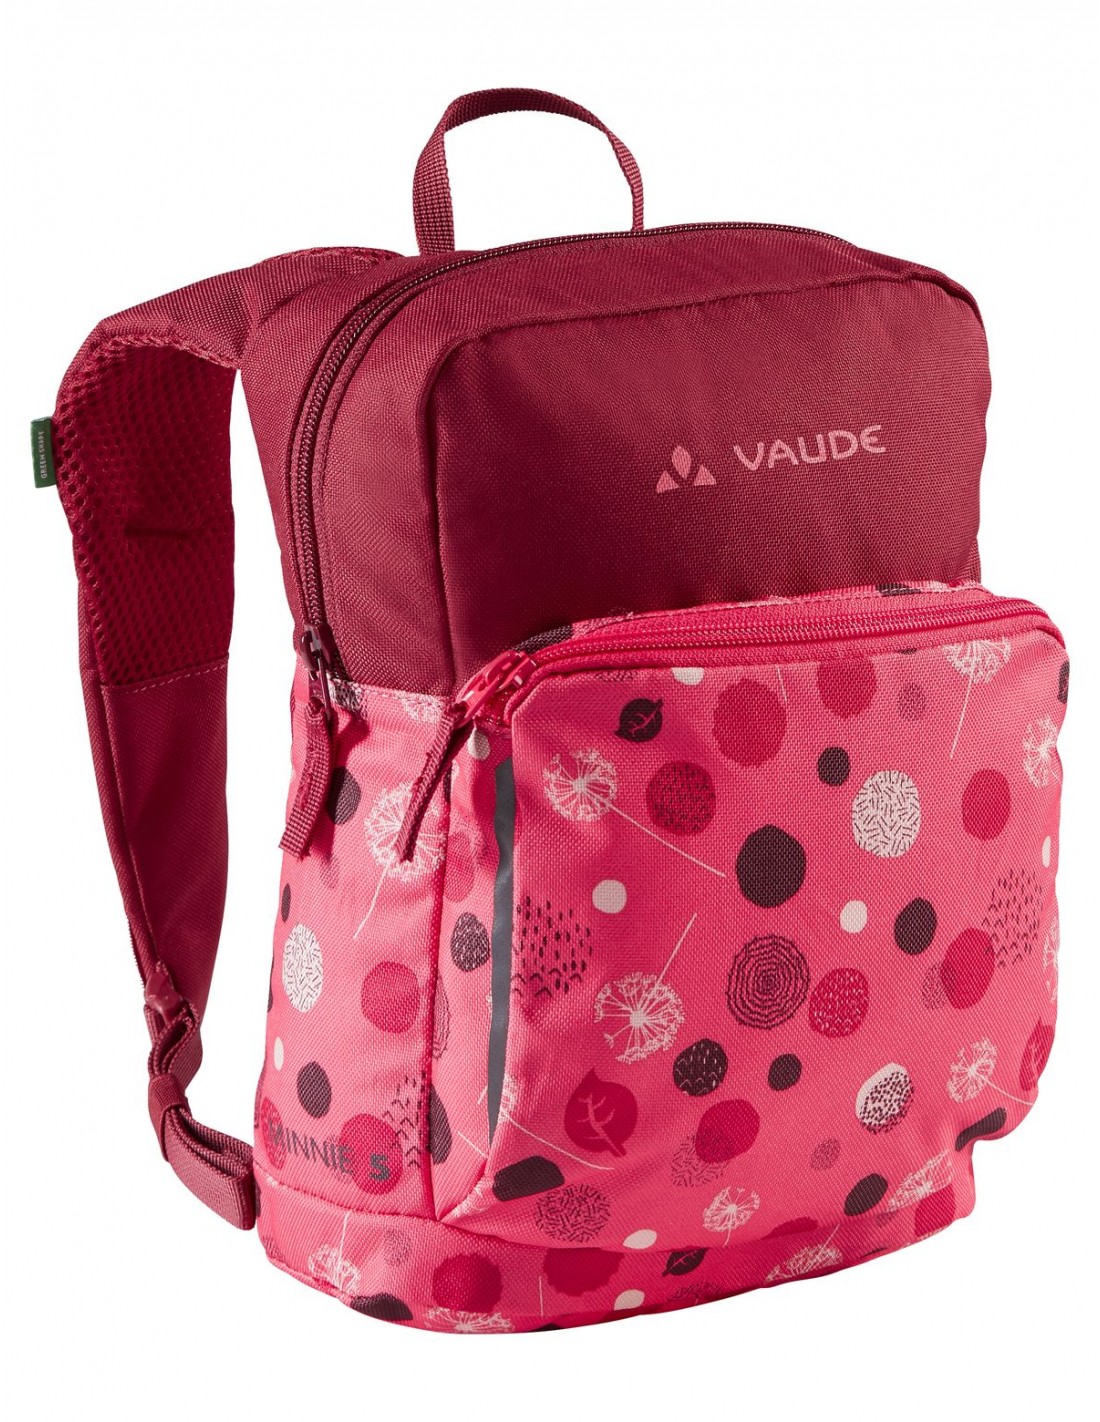 Vaude Kinderrucksack Minnie 5, bright pink/cranberry Rucksackart - Kinderrucksäcke, Rucksackvolumen - 1 - 5 Liter, Rucksackfarbe - Pink, von Vaude